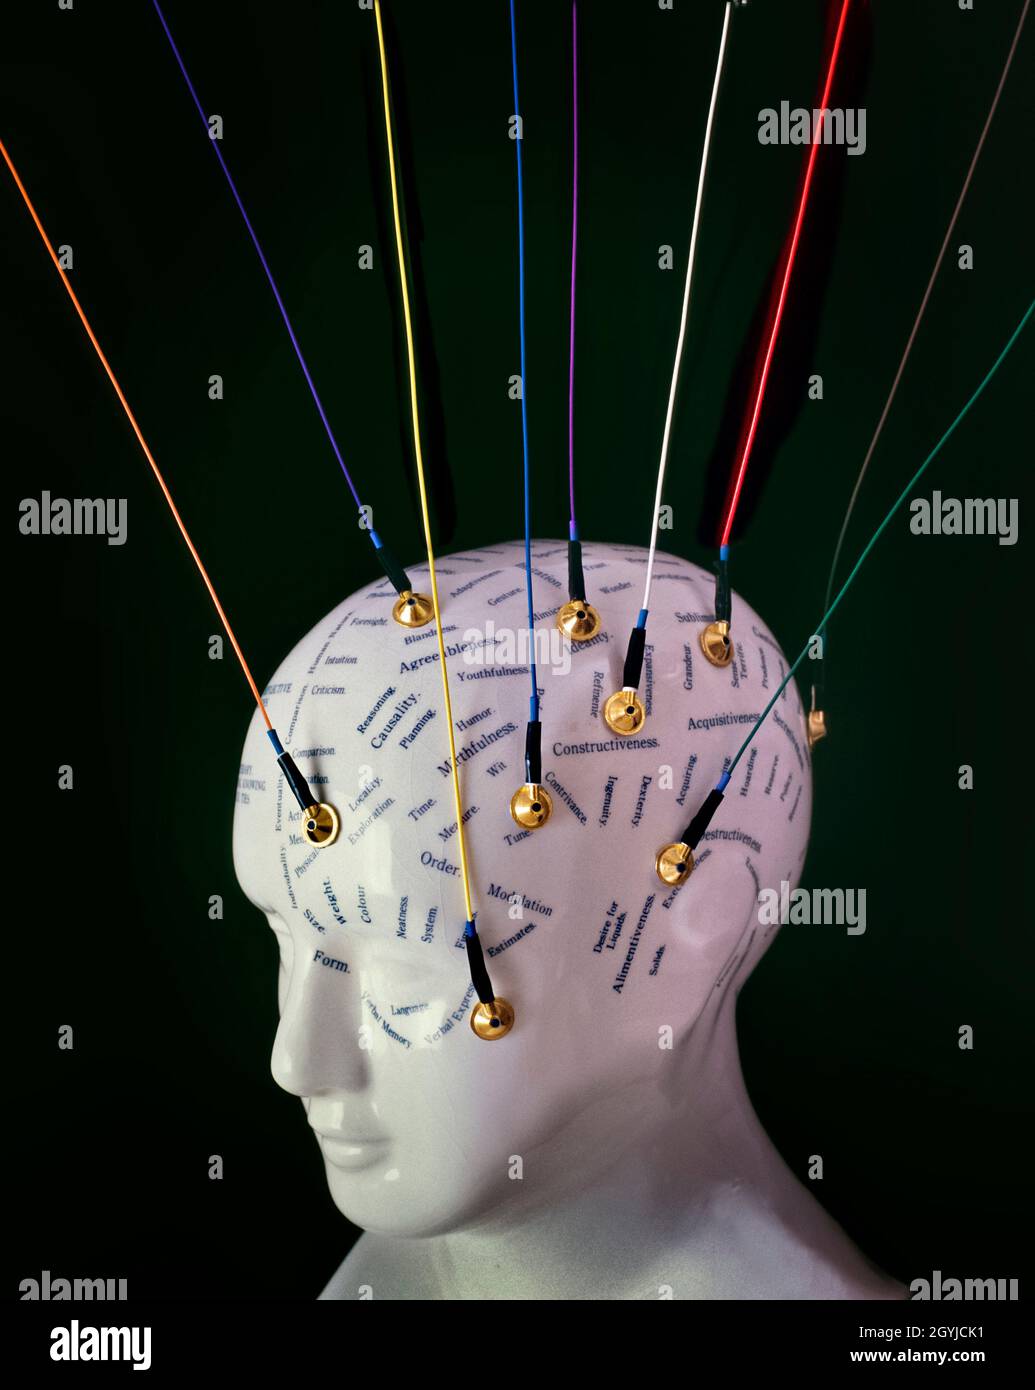 Konzeptionelles Bild mit modernen EEG-Elektroden (Elektroenzephalogramm), die an einem phroenologischen Kopf der Töpferei angebracht sind. Stockfoto